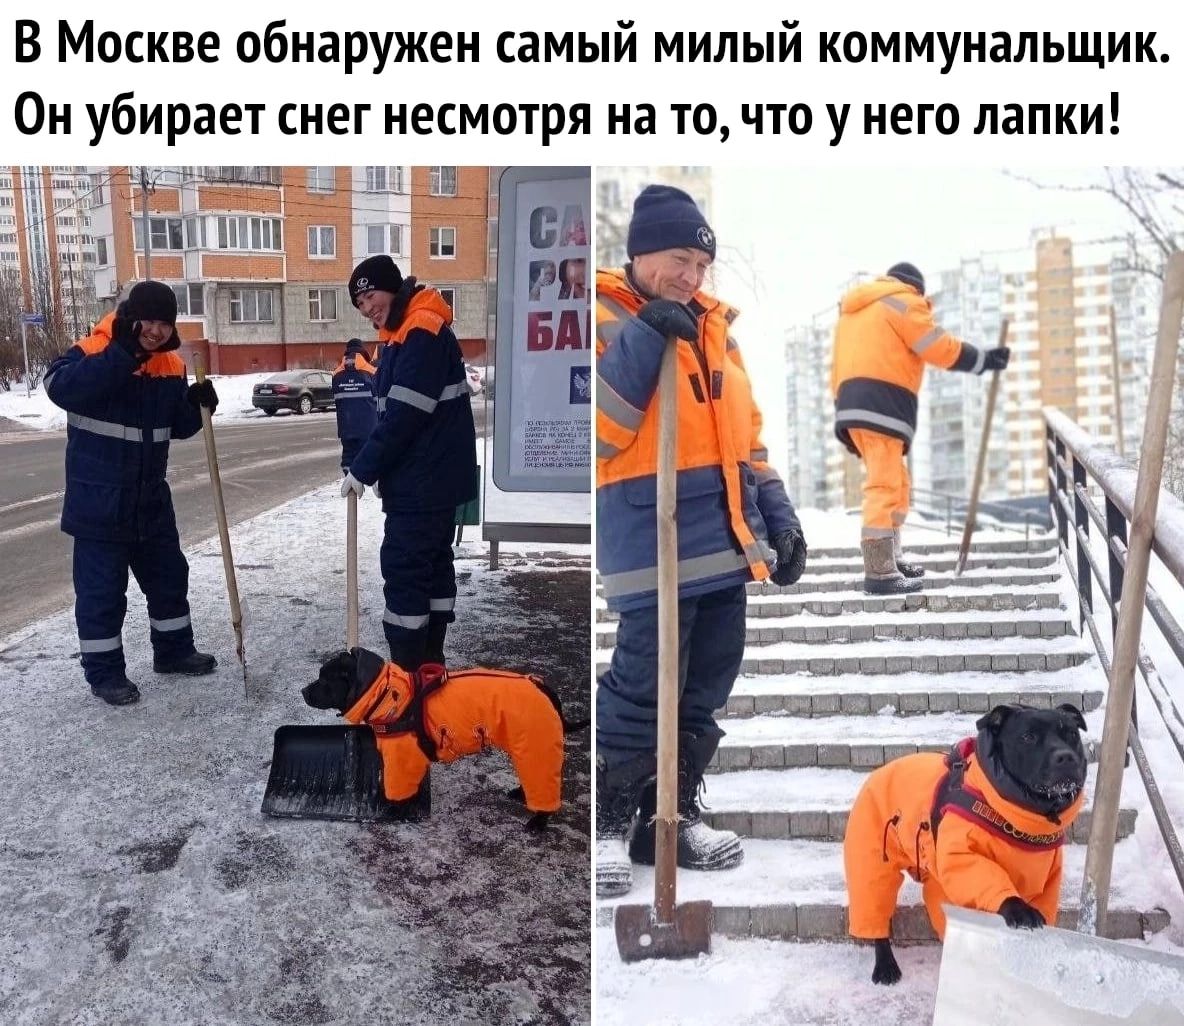 В Москве обнаружен самый милый коммунальщик Ои убирает снег несмотря на то что у него лапки